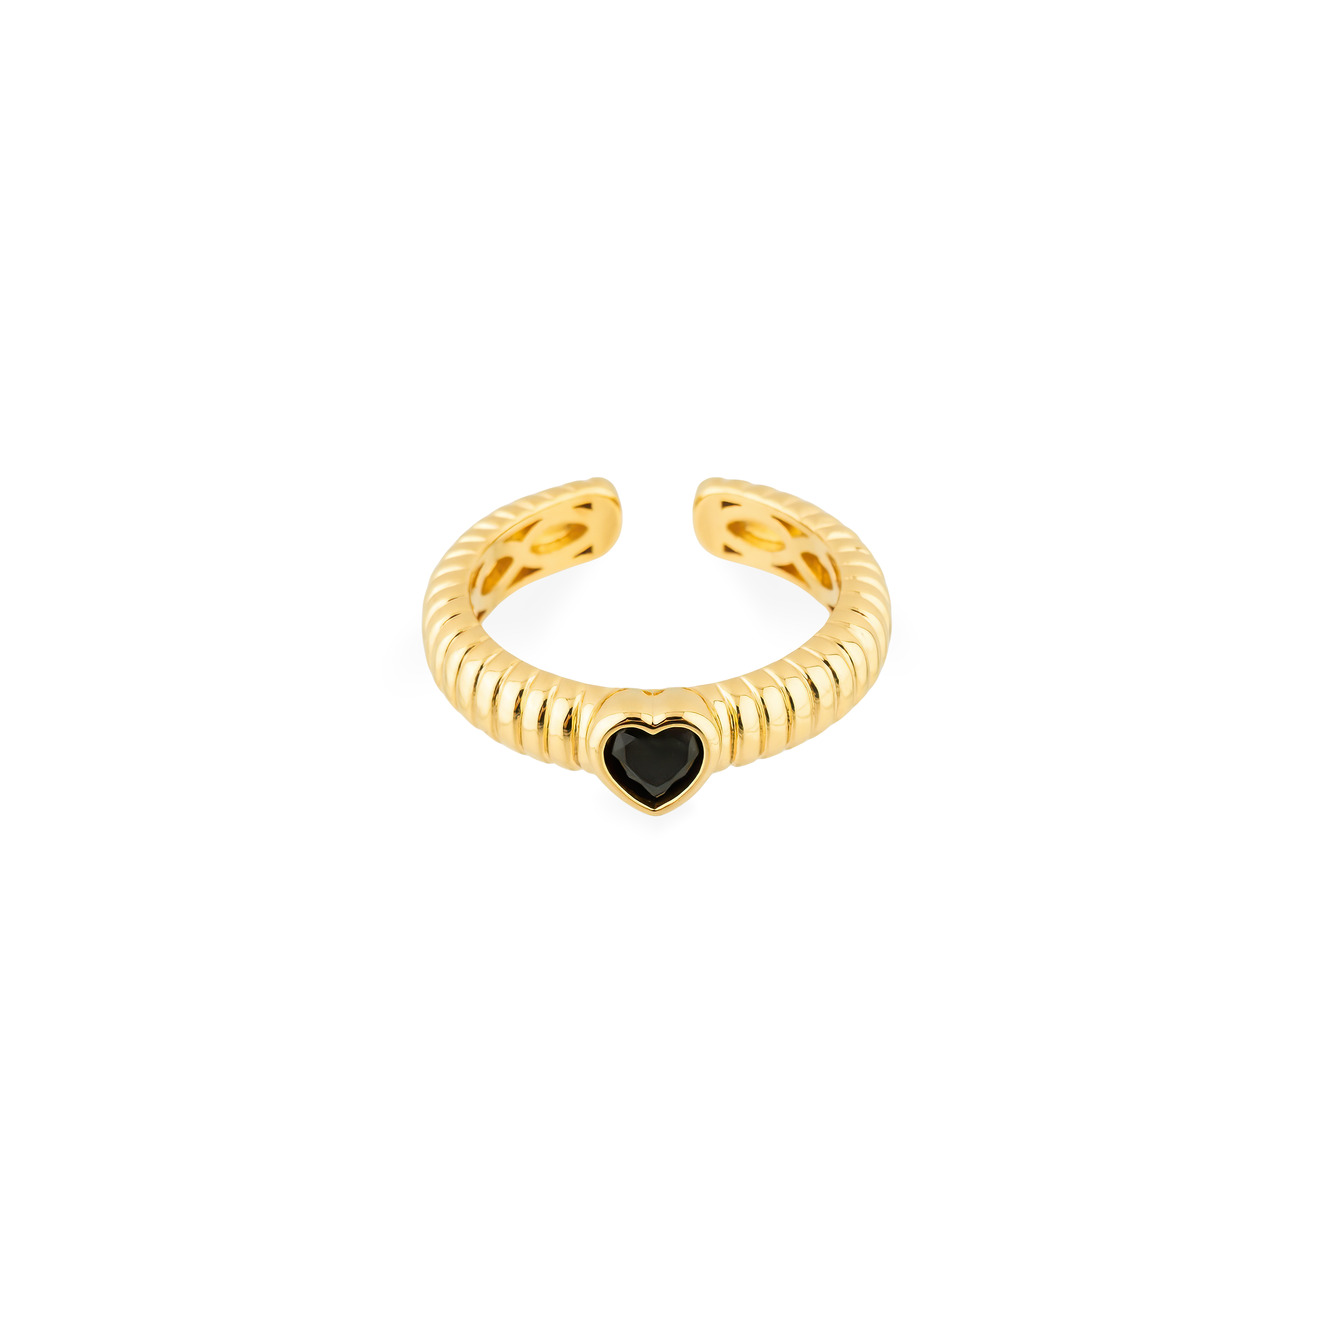 Herald Percy Золотистое фигурное кольцо с черным сердцем herald percy золотистое фигурное кольцо с зеленым сердцем